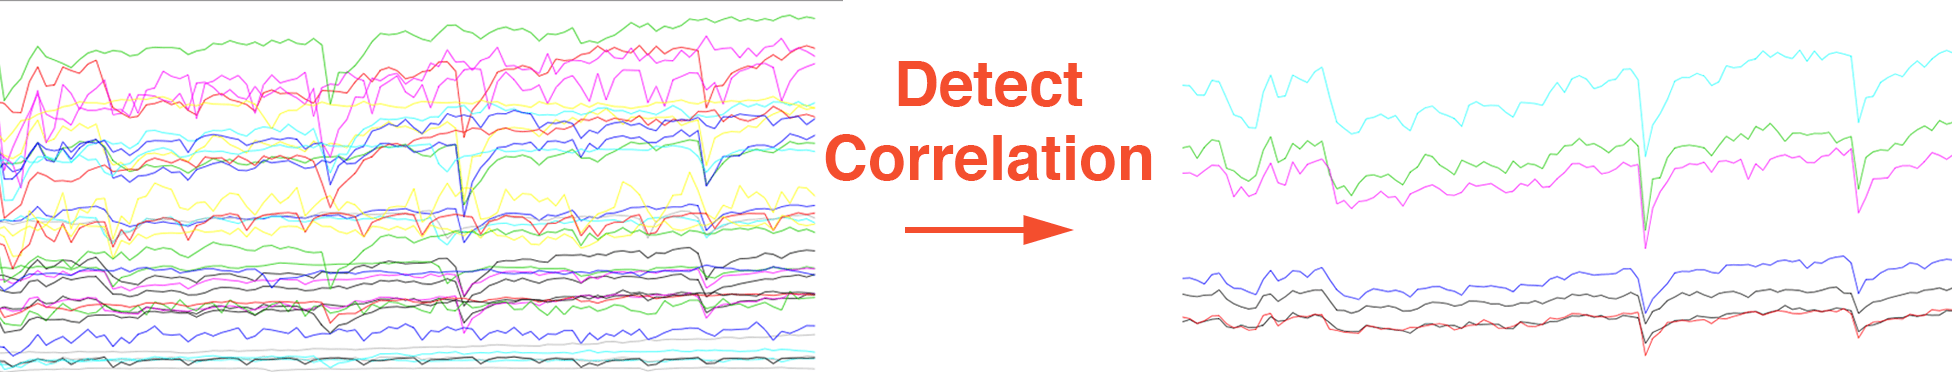 detect-correlation